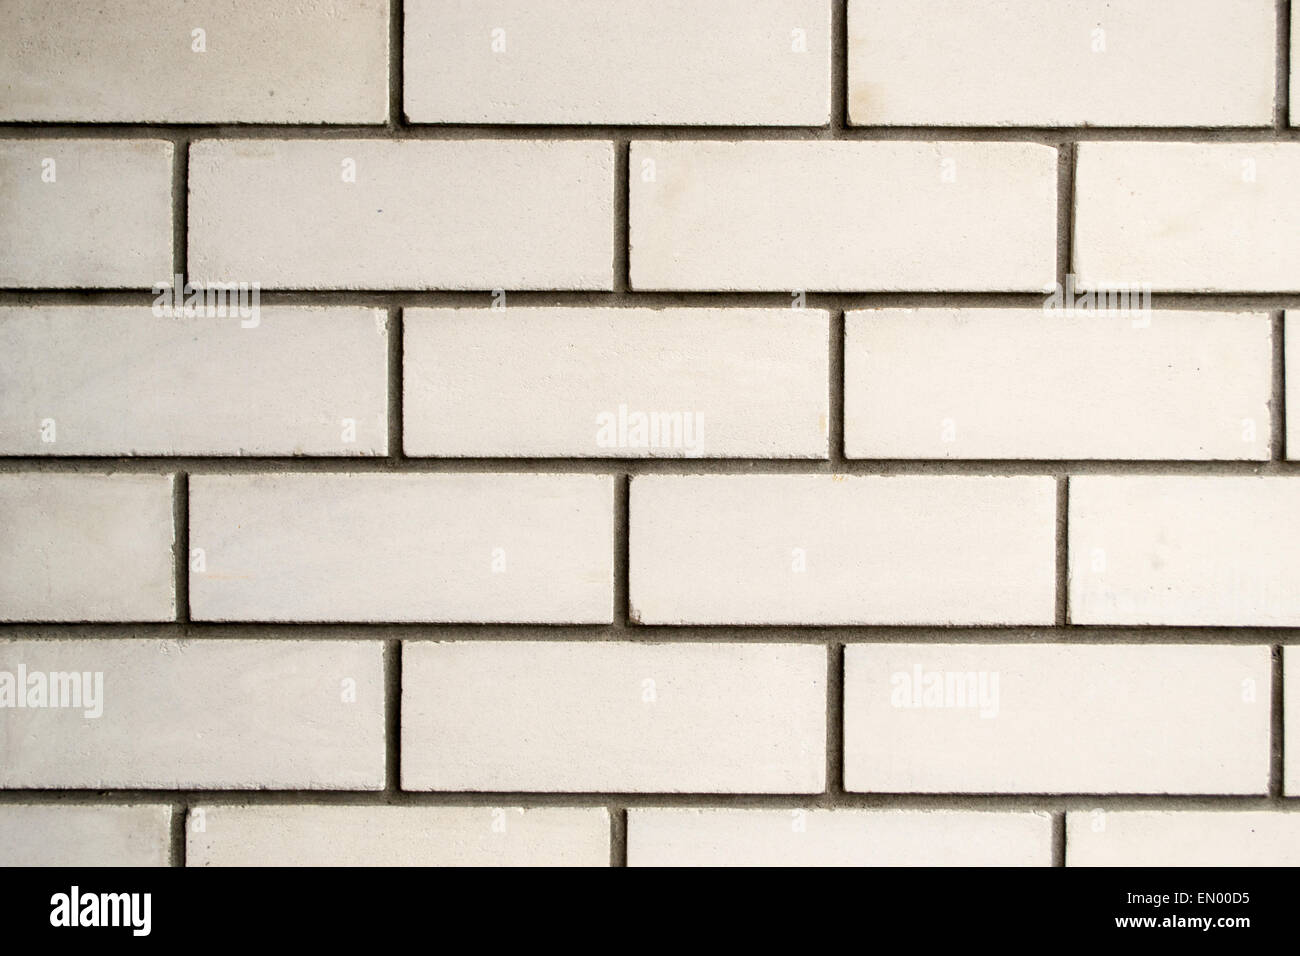 Brique en pierre blanche avec mur de ciment Le ciment gris Banque D'Images